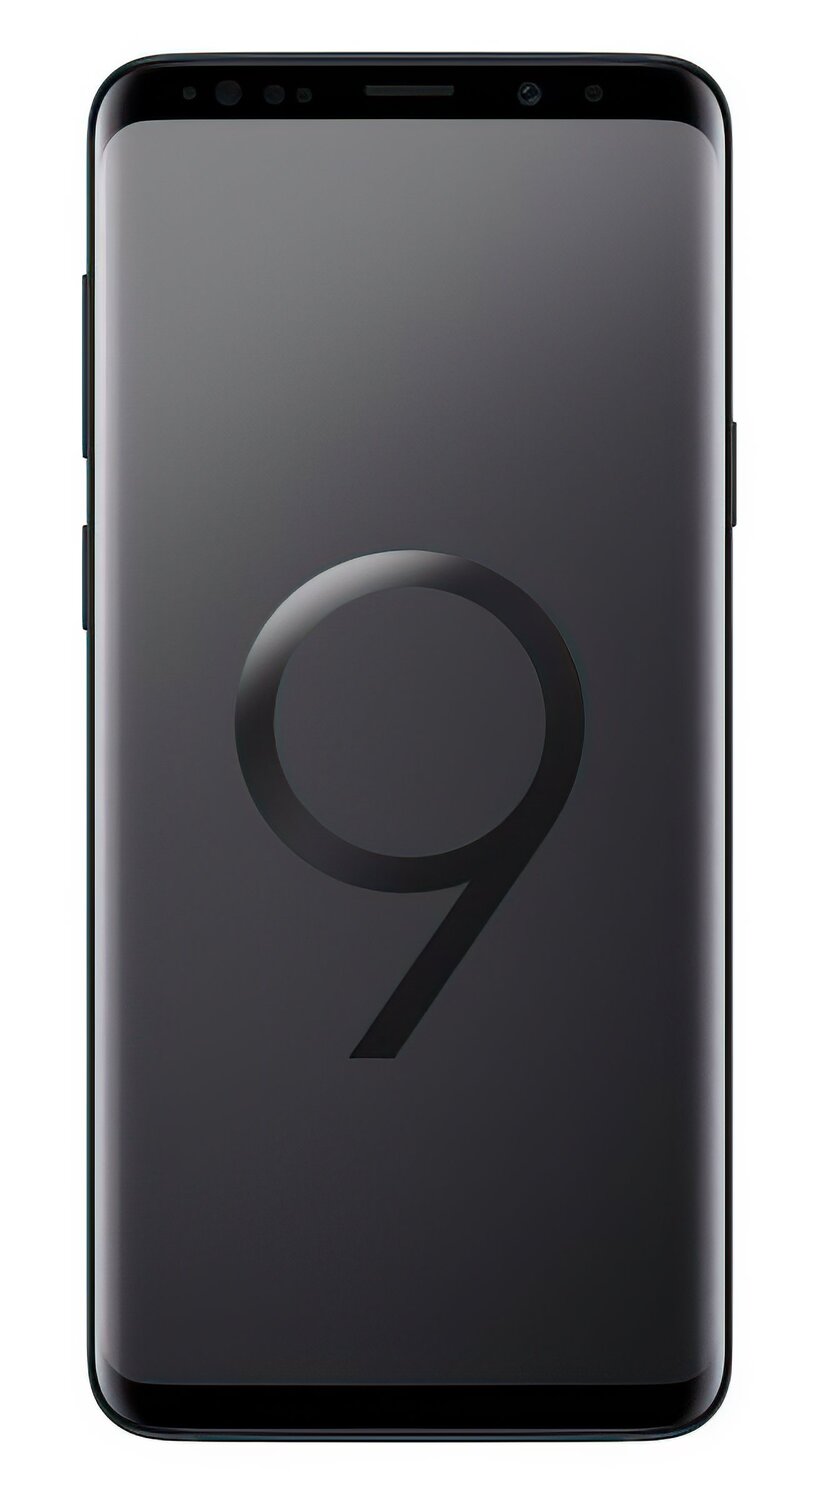  Смартфон Samsung Galaxy S9 + G965F 64Gb Black фото